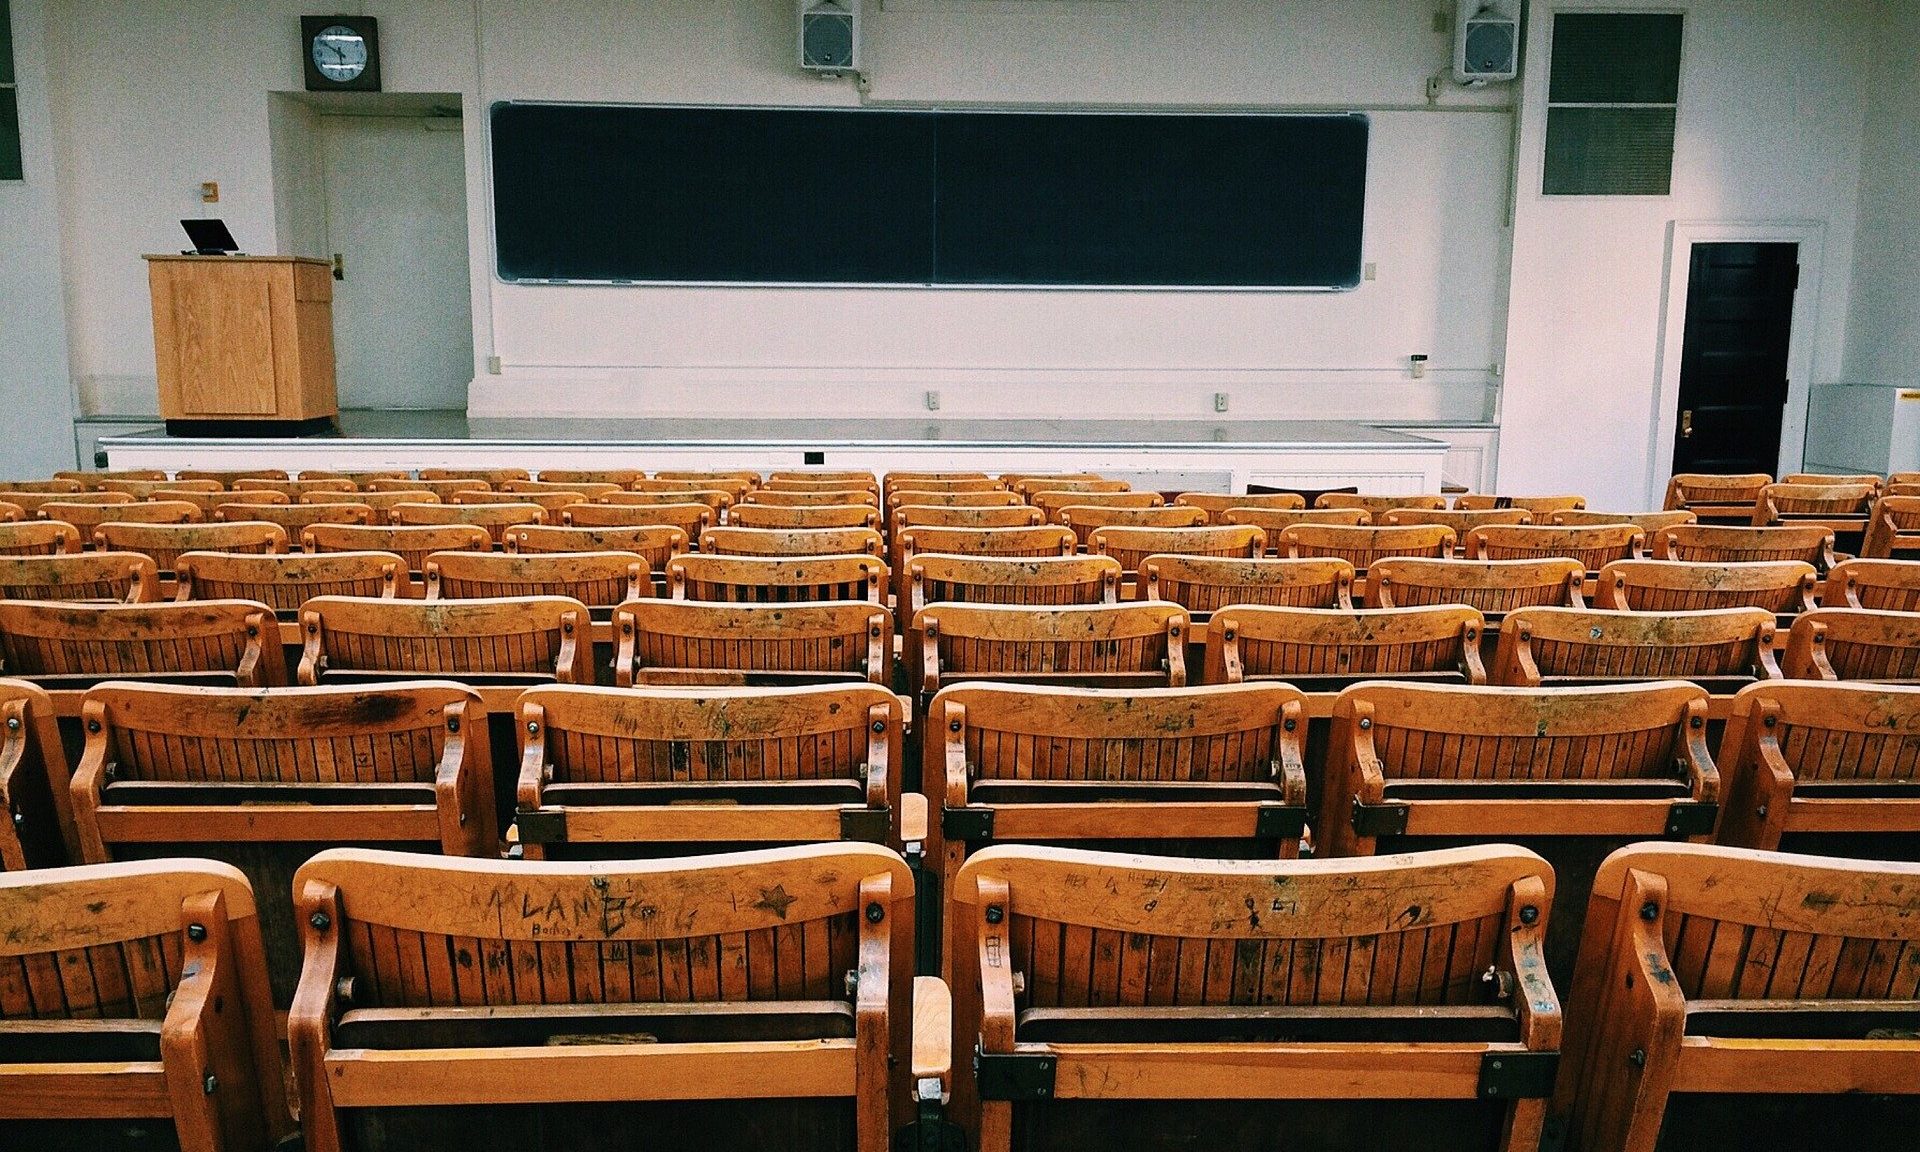 Empty college classroom